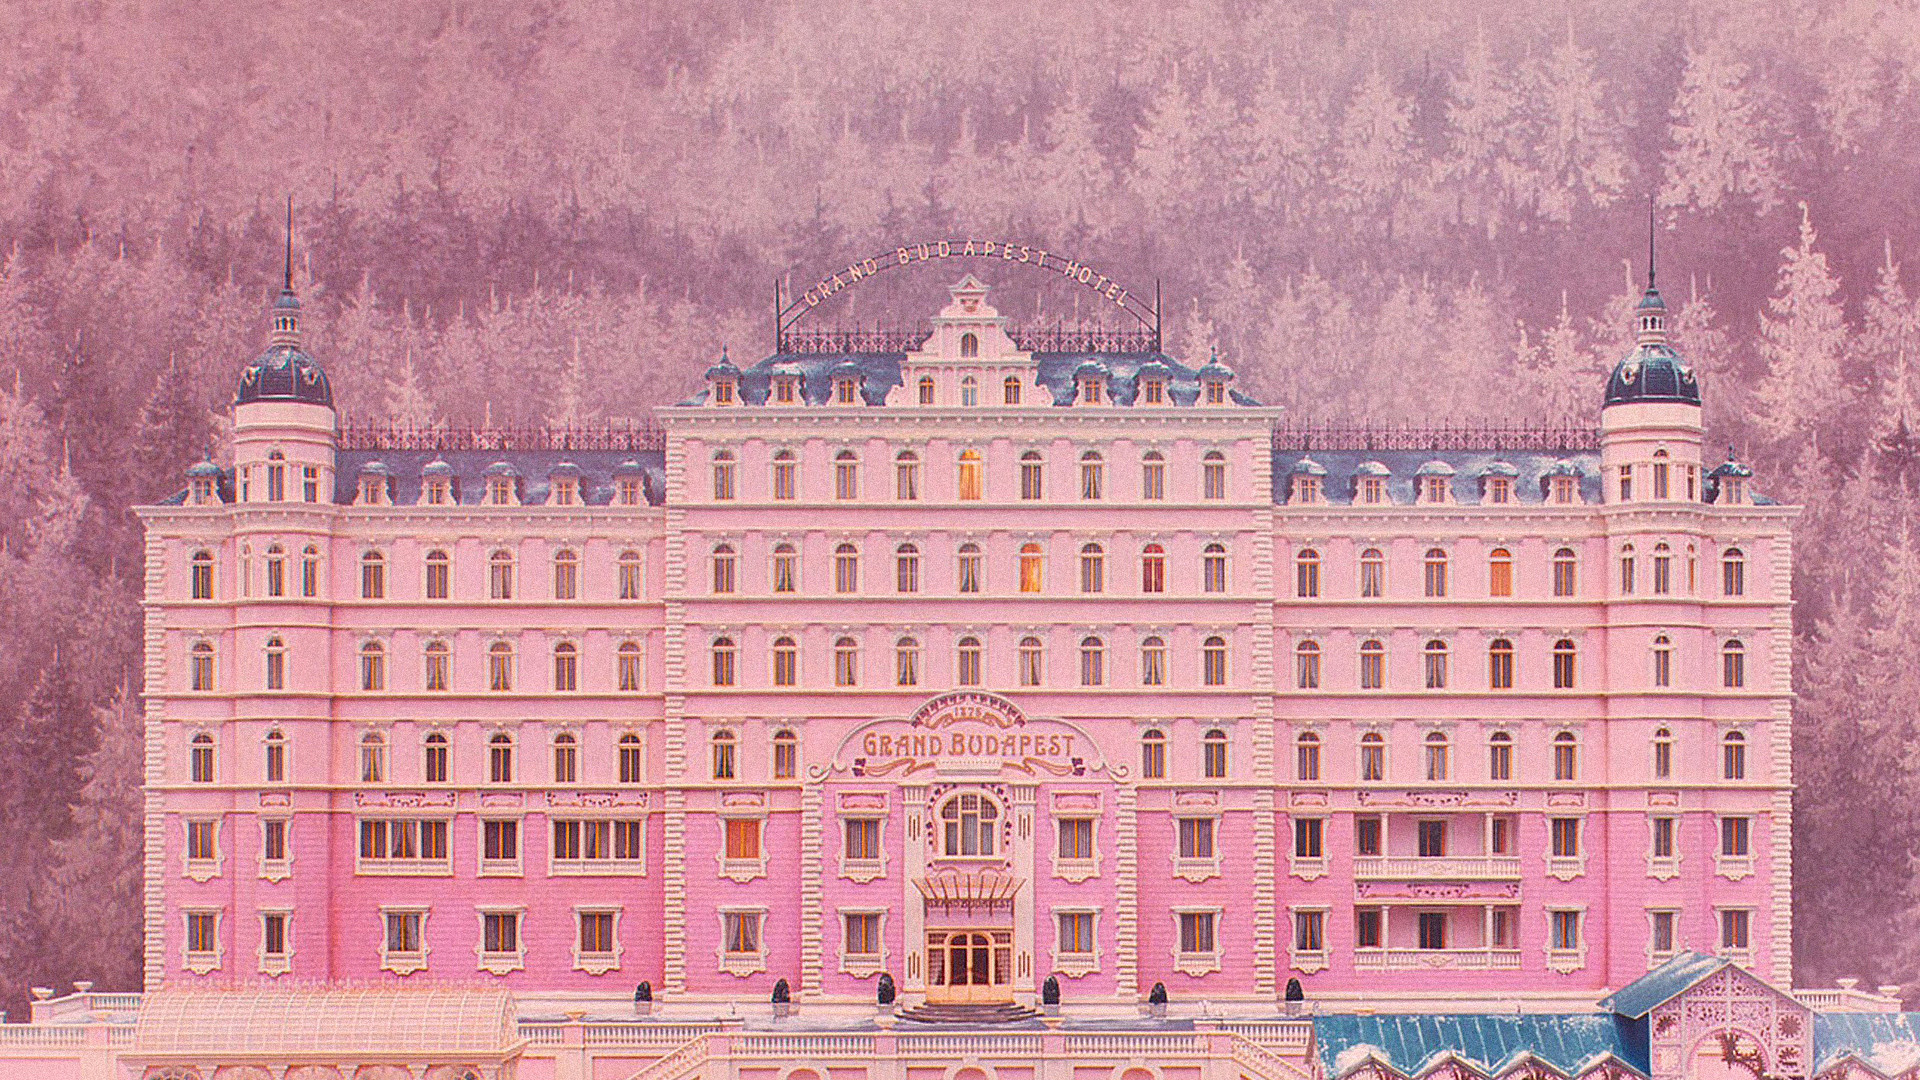 ウェス・アンダーソン壁紙,ピンク,建物,宮殿,建築,ch teau